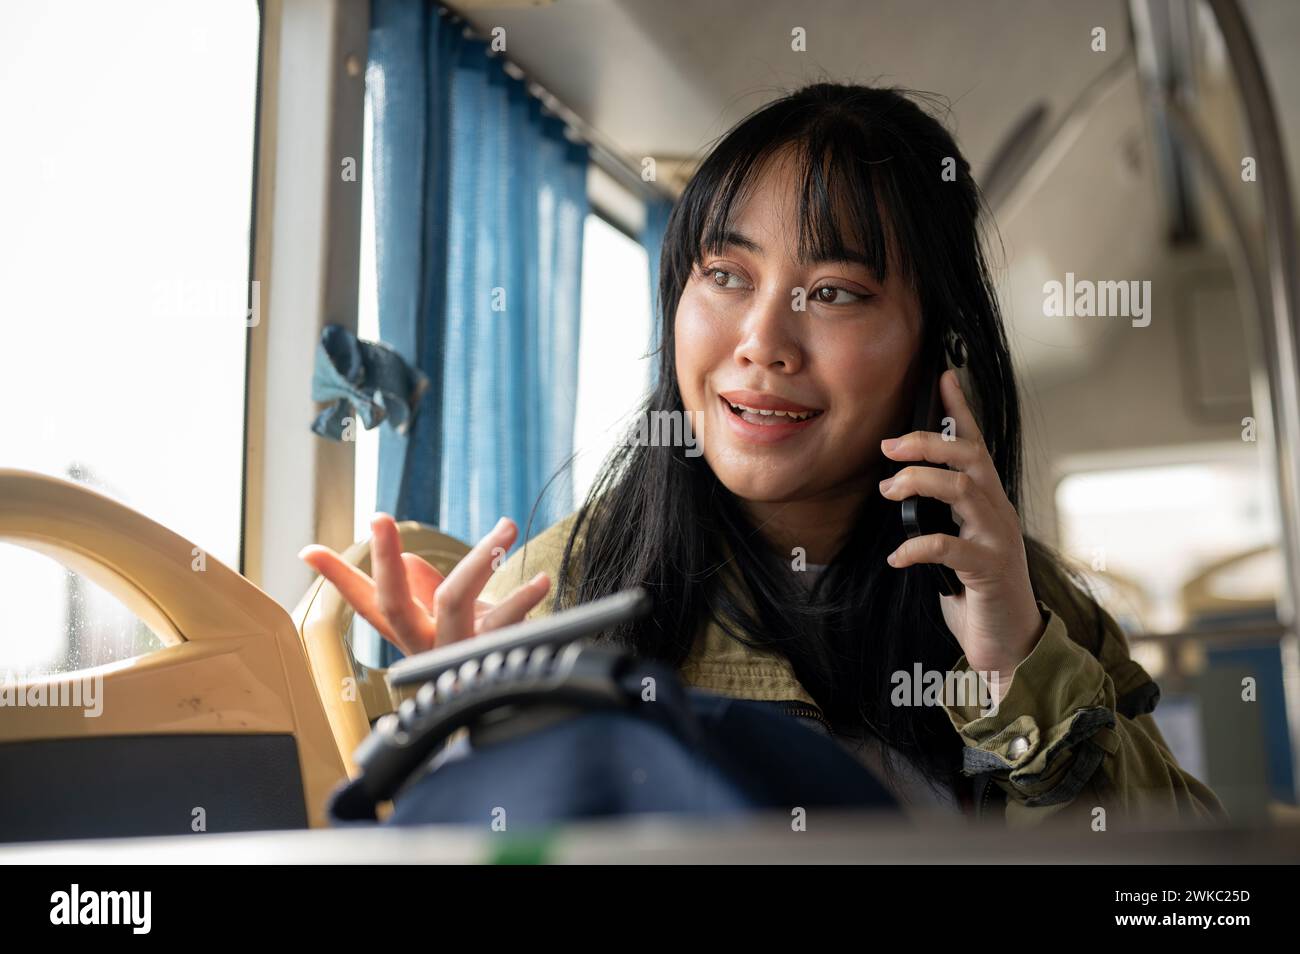 Eine glückliche asiatische Frau sitzt im Bus, blickt aus dem Fenster und bewundert die Aussicht entlang der Straße, während sie telefoniert. Menschen und öffentliche Verkehrsmittel Stockfoto